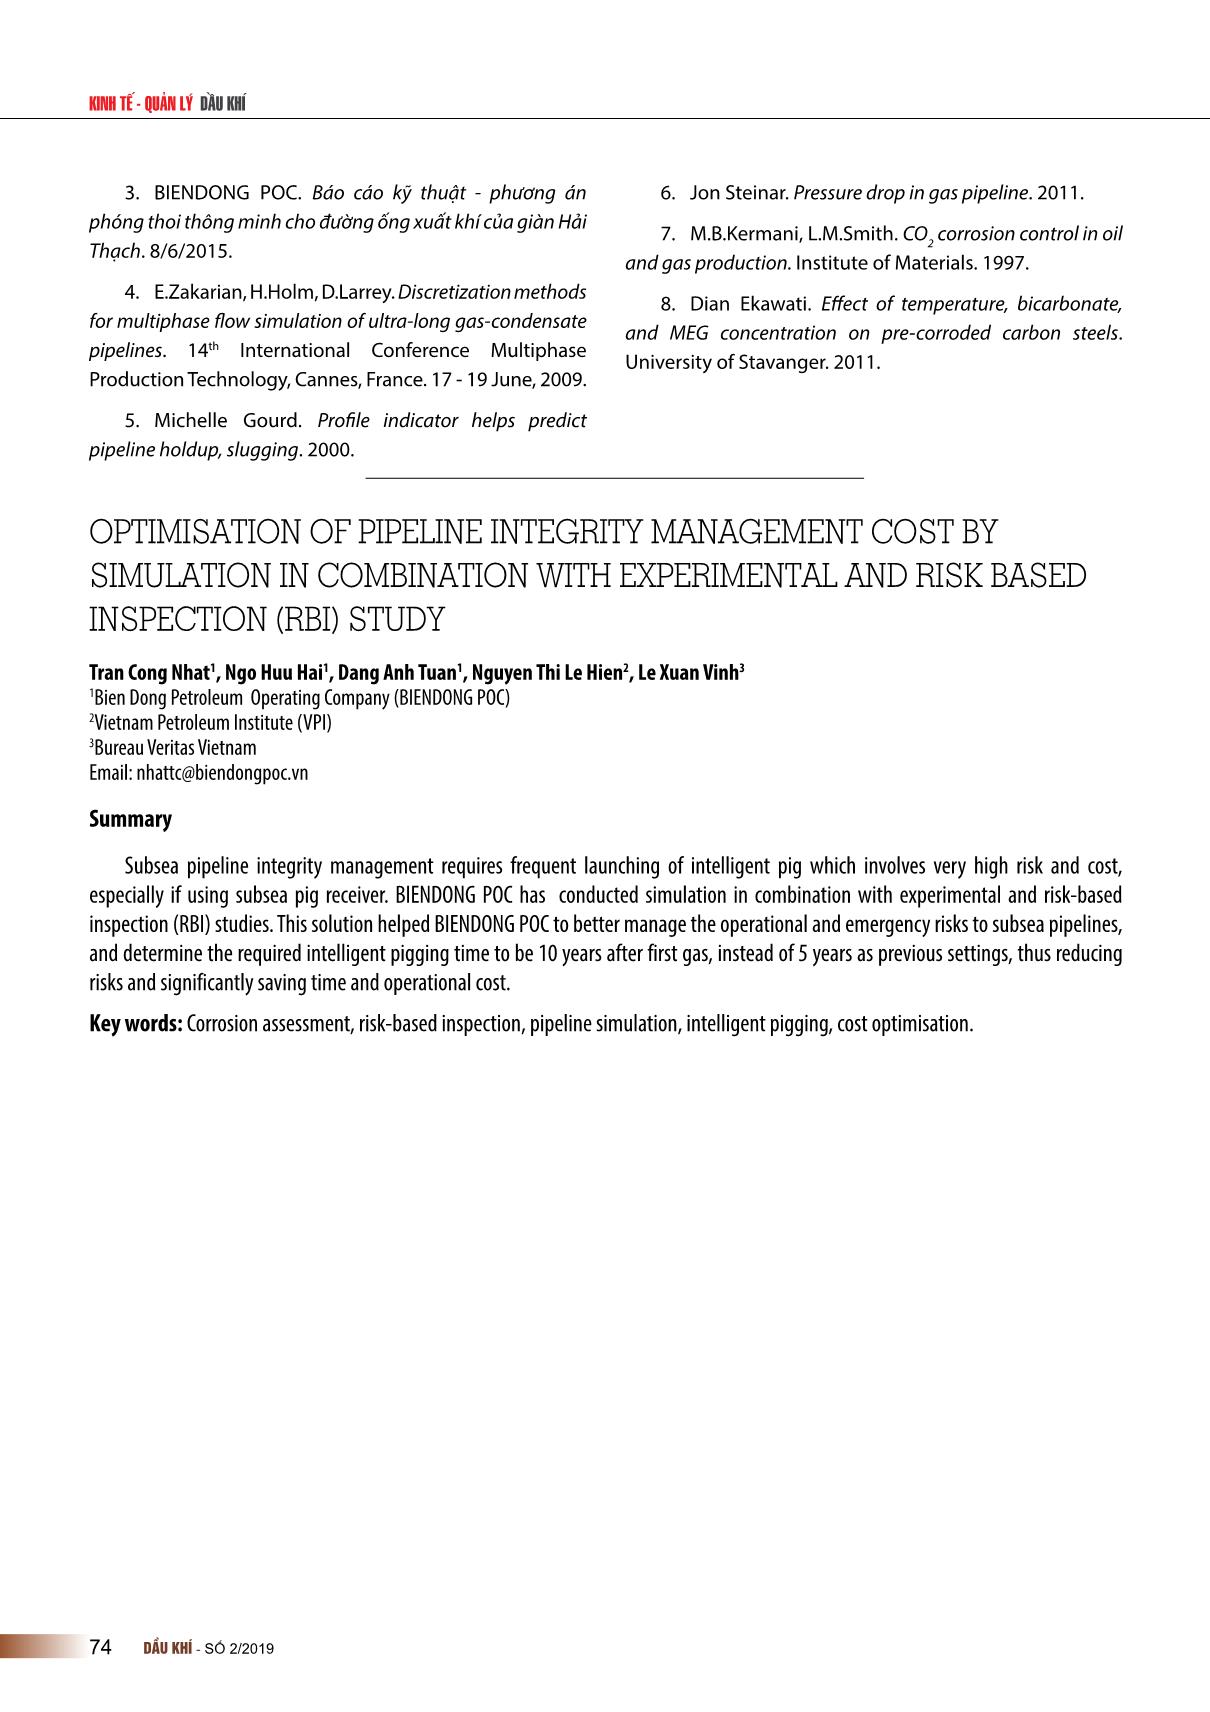 Tối ưu chi phí quản lý sự toàn vẹn đường ống ngầm bằng nghiên cứu mô phỏng kết hợp thực nghiệm và kiểm định trên cơ sở rủi ro (RBI) trang 6